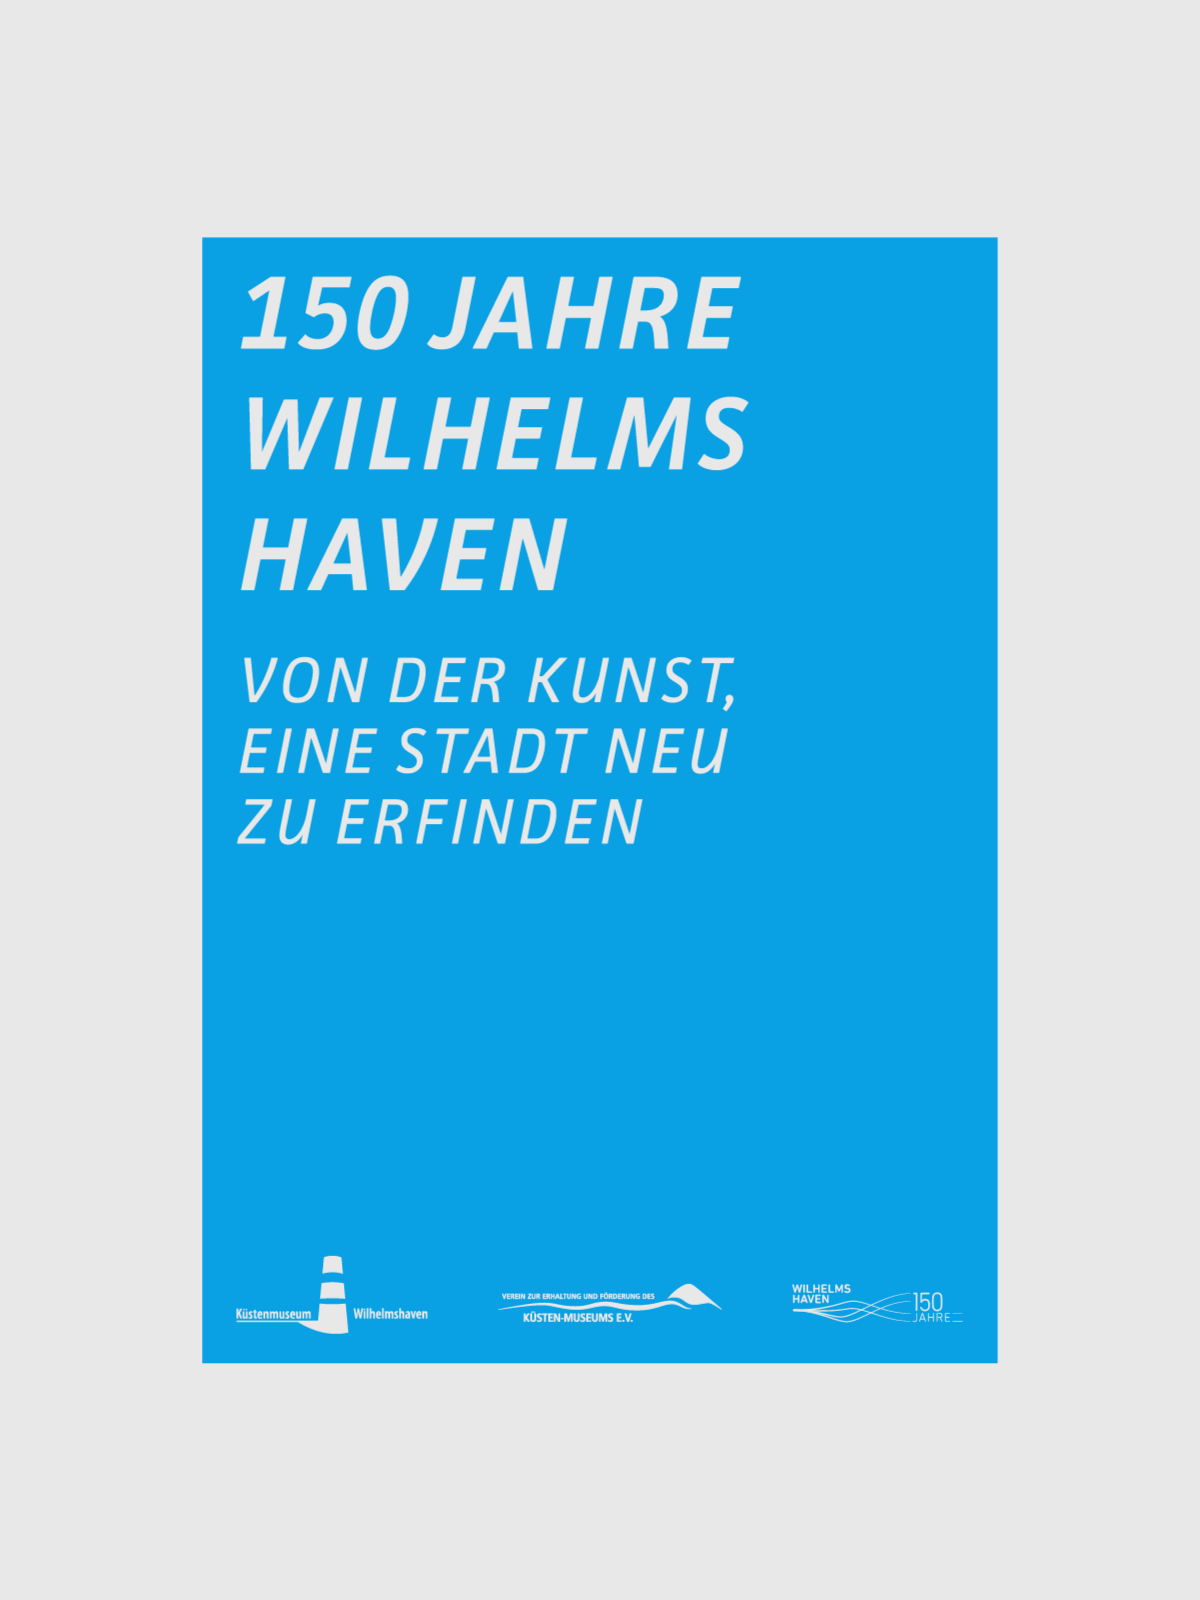 Küstenmuseum Wilhelmshaven Sonderausstellung 150 Jahre Wilhelmshaven Ausstellungsplakat animiert weiße Schrift auf blauem Hintergrund